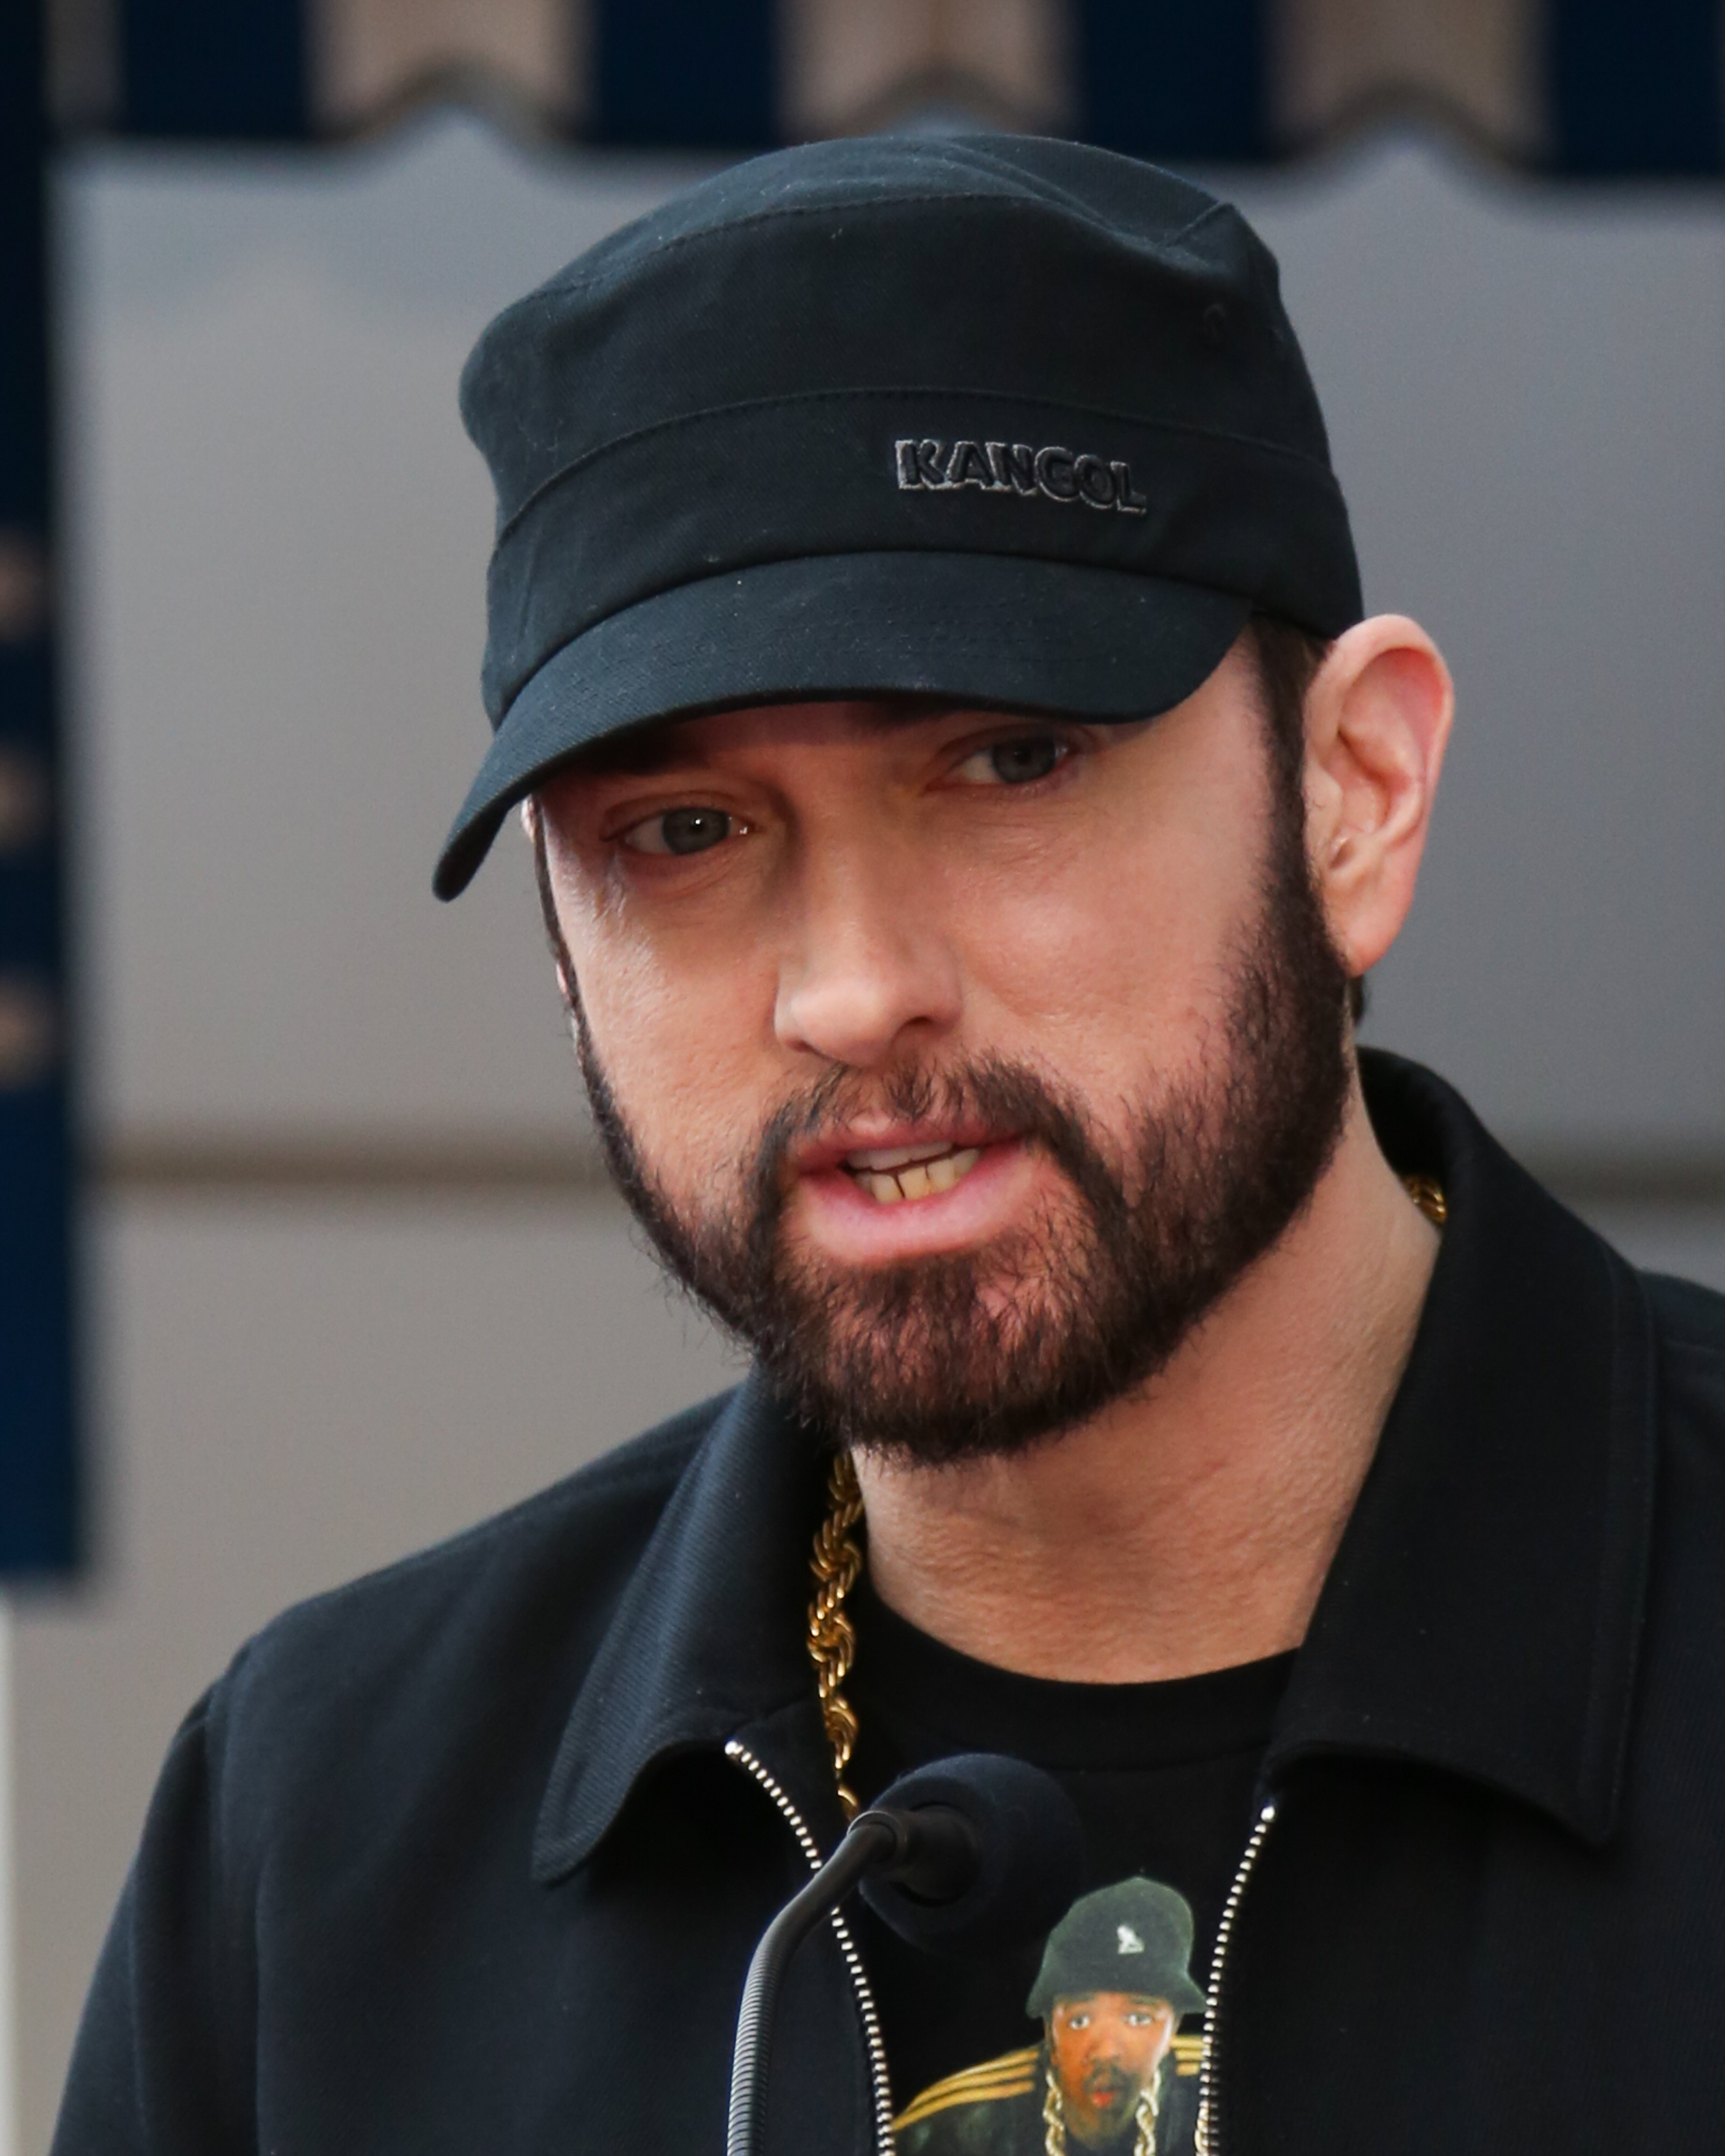 Eminem asiste a una ceremonia en honor a Curtis "50 Cent" Jackson con una estrella en el Paseo de la Fama de Hollywood el 30 de enero de 2020 en Hollywood, California | Fuente: Getty Images